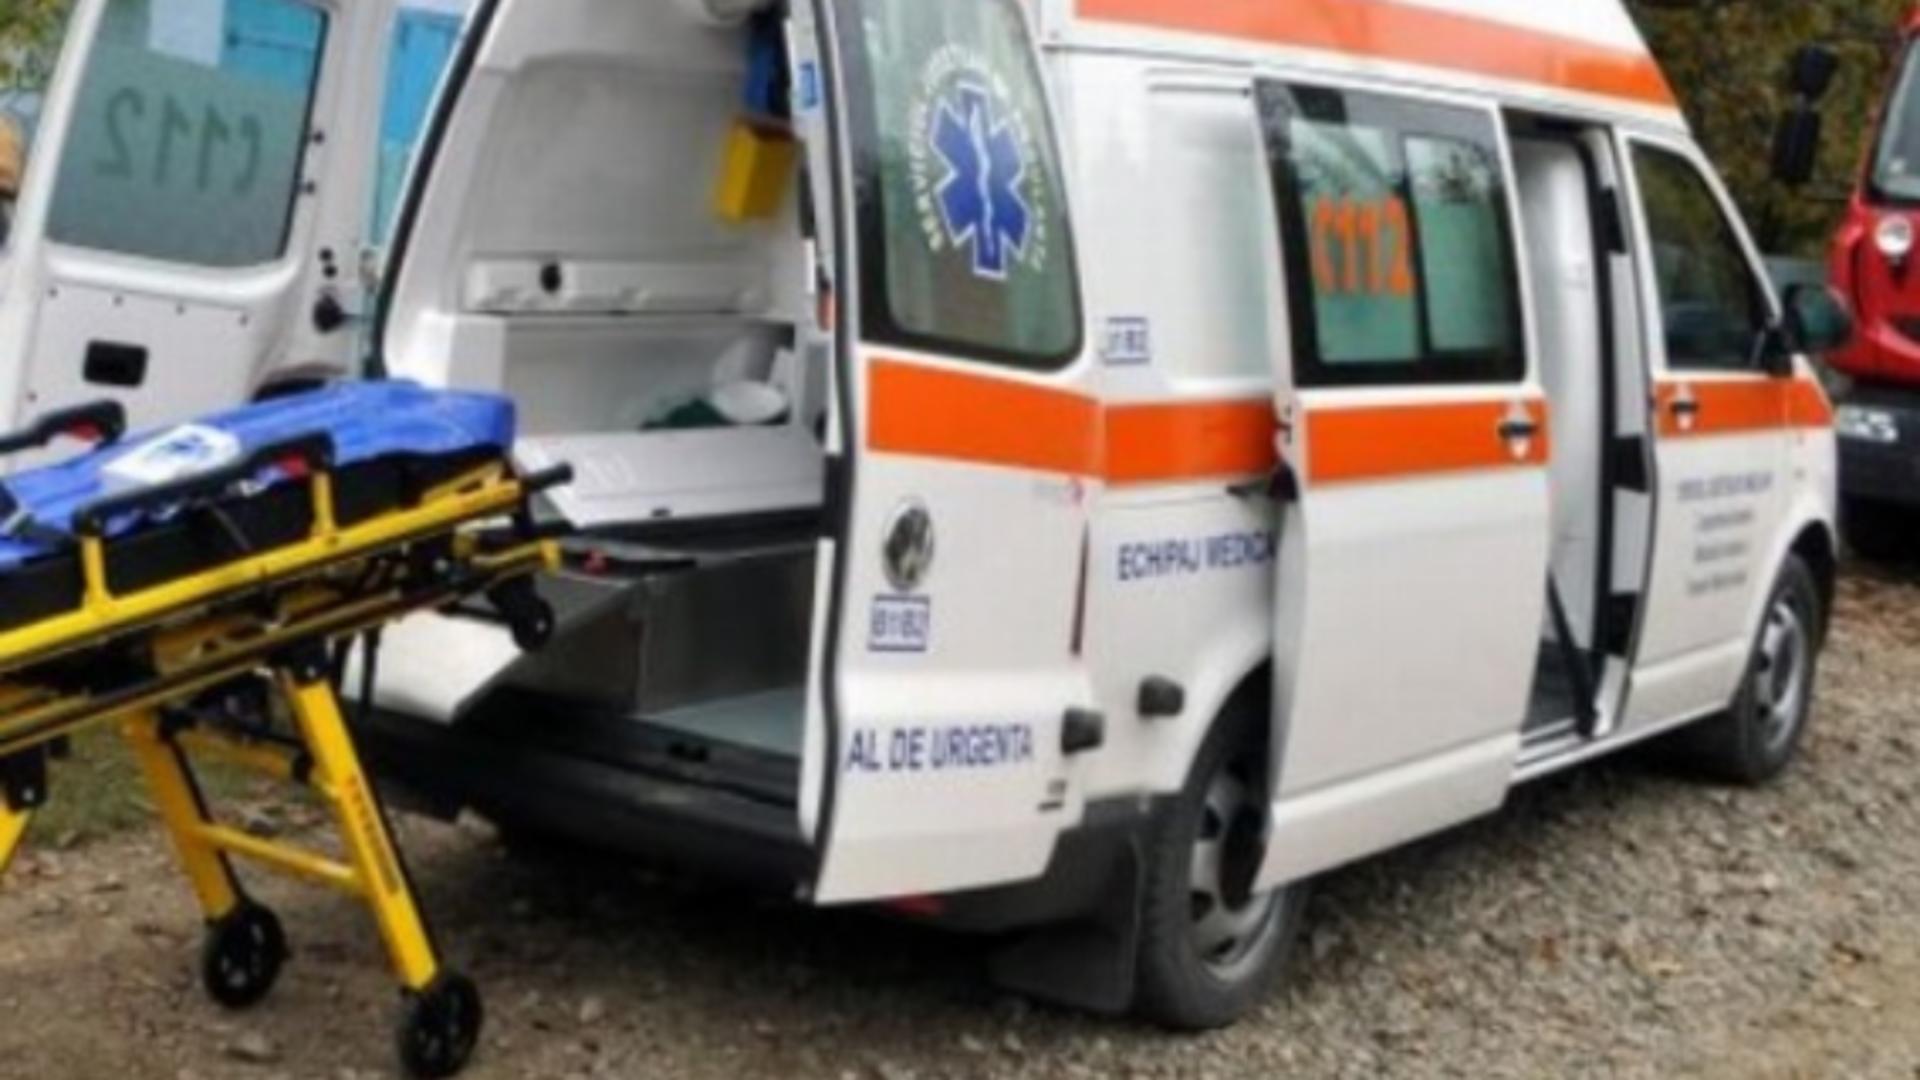 Ambulanță -  imagine de arhivă